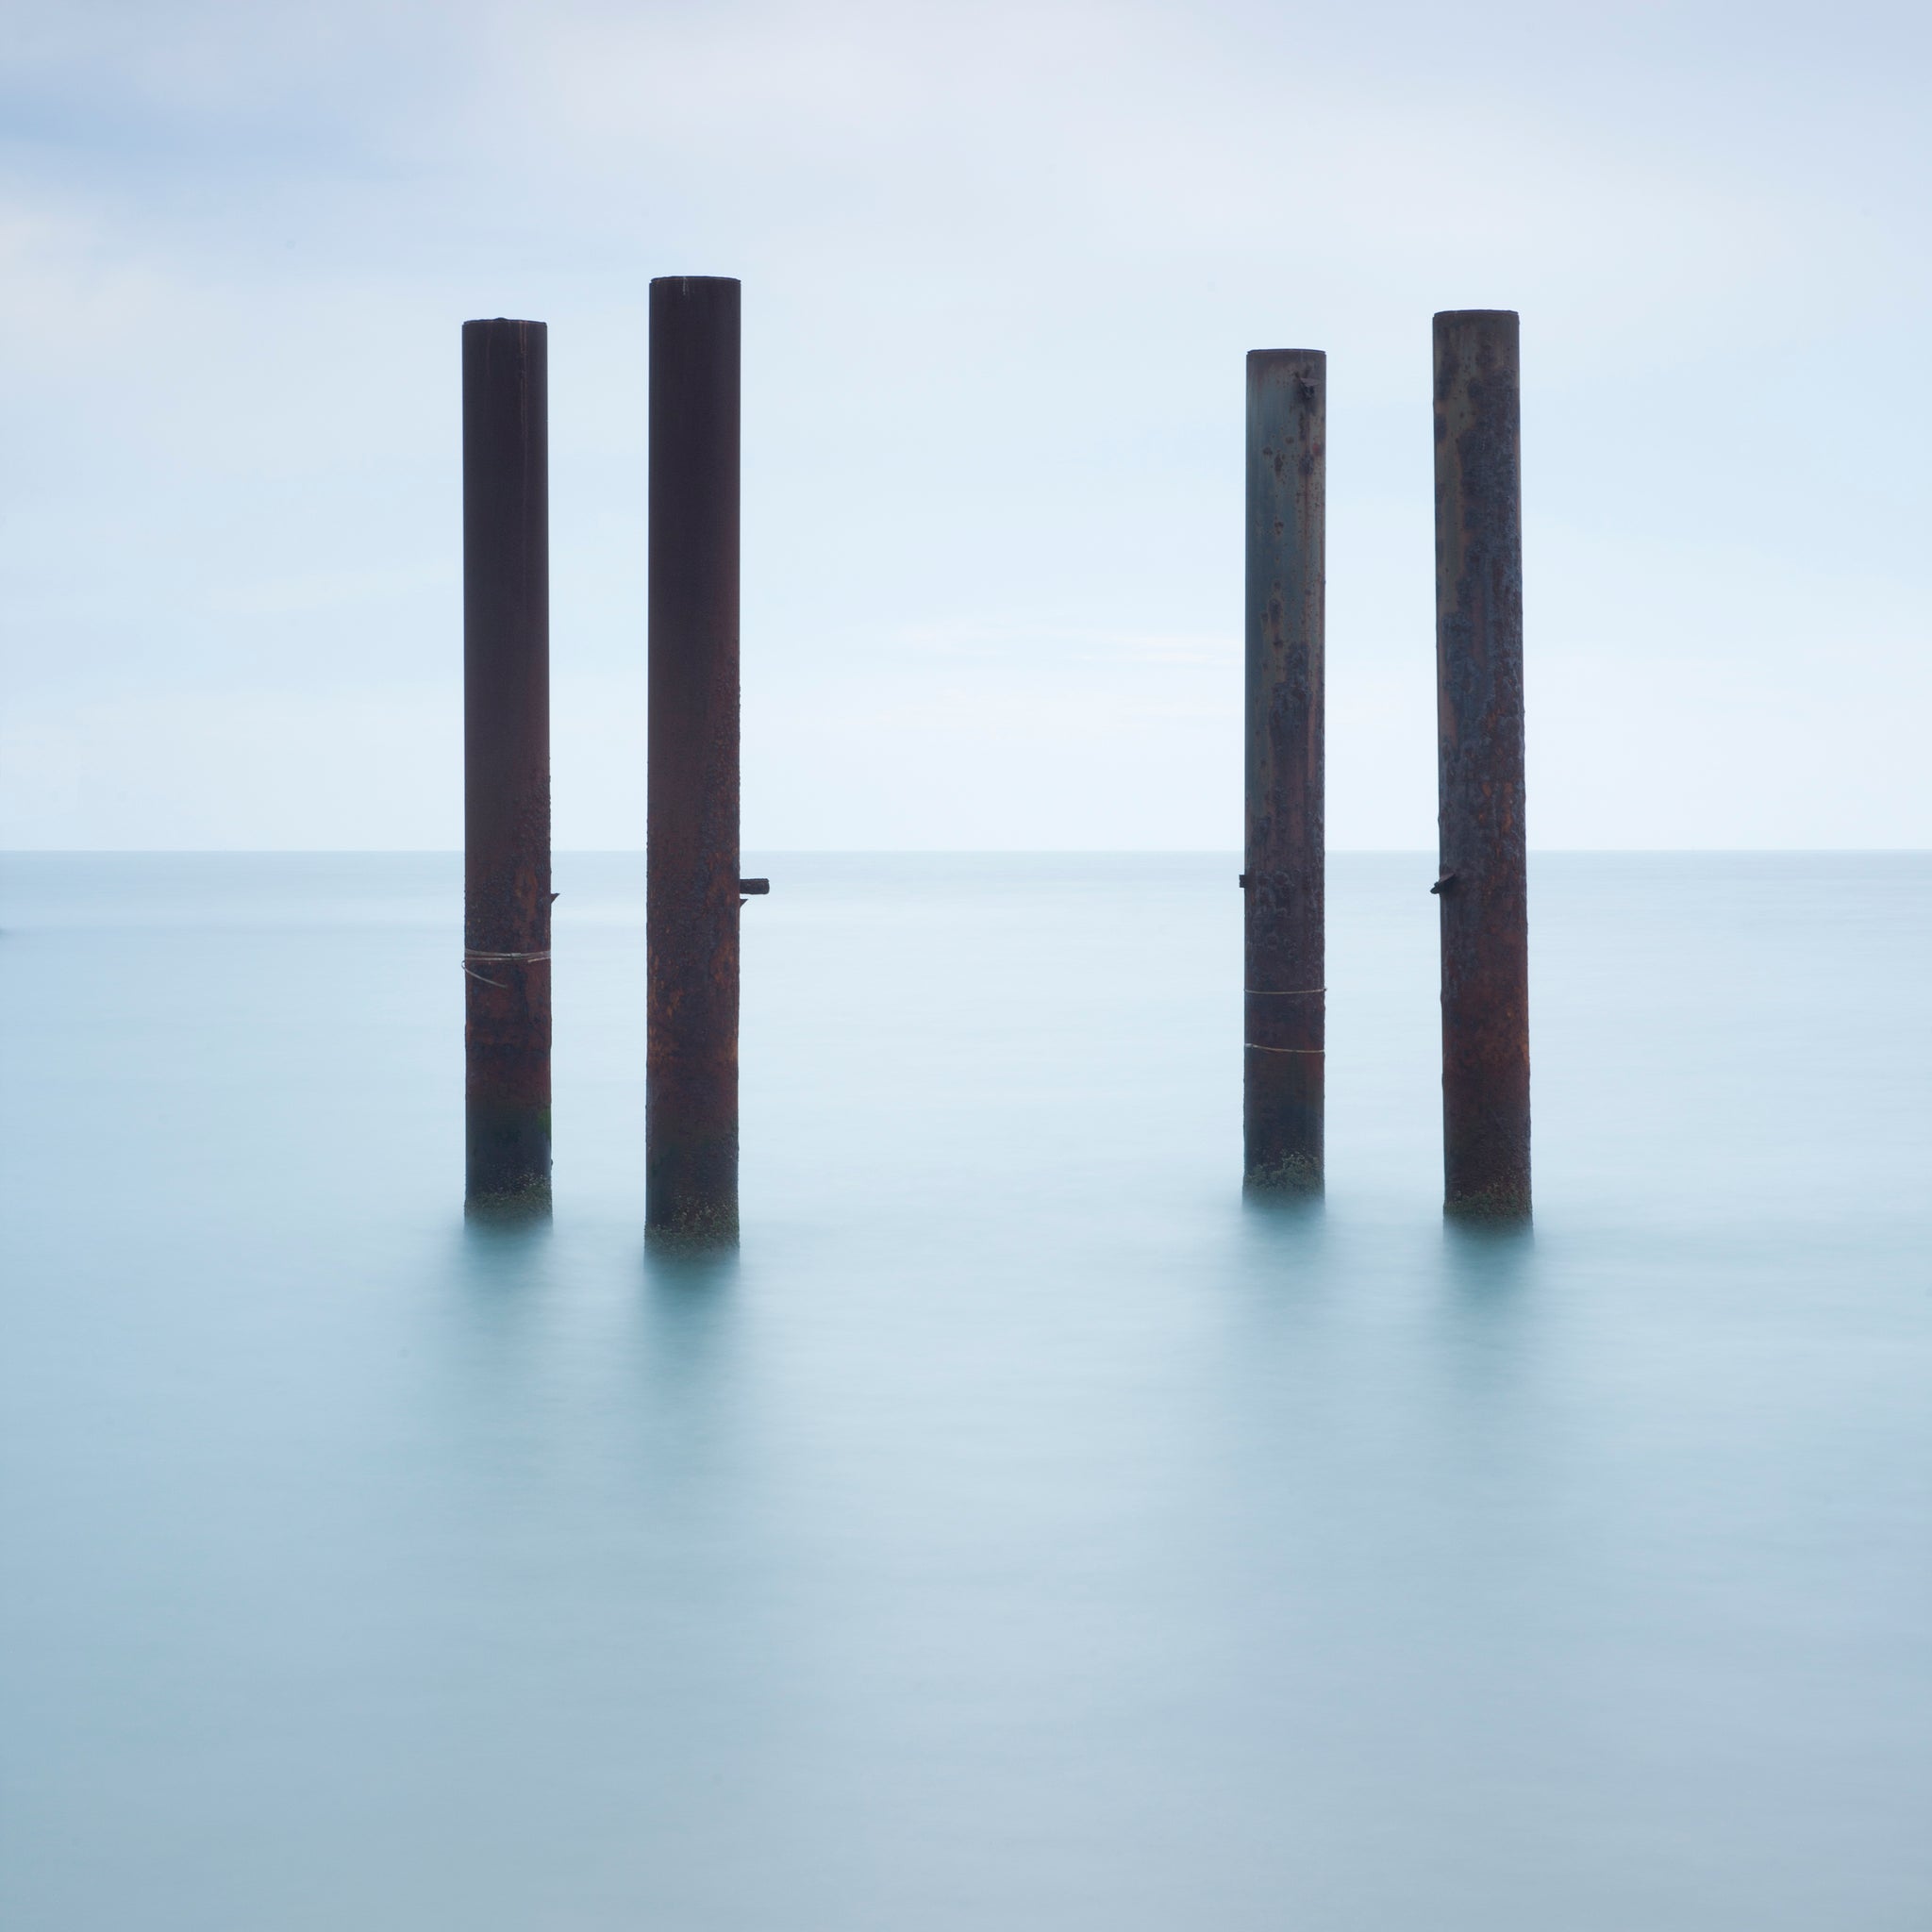 Four Pillars II, Square - Brighton, West Sussex